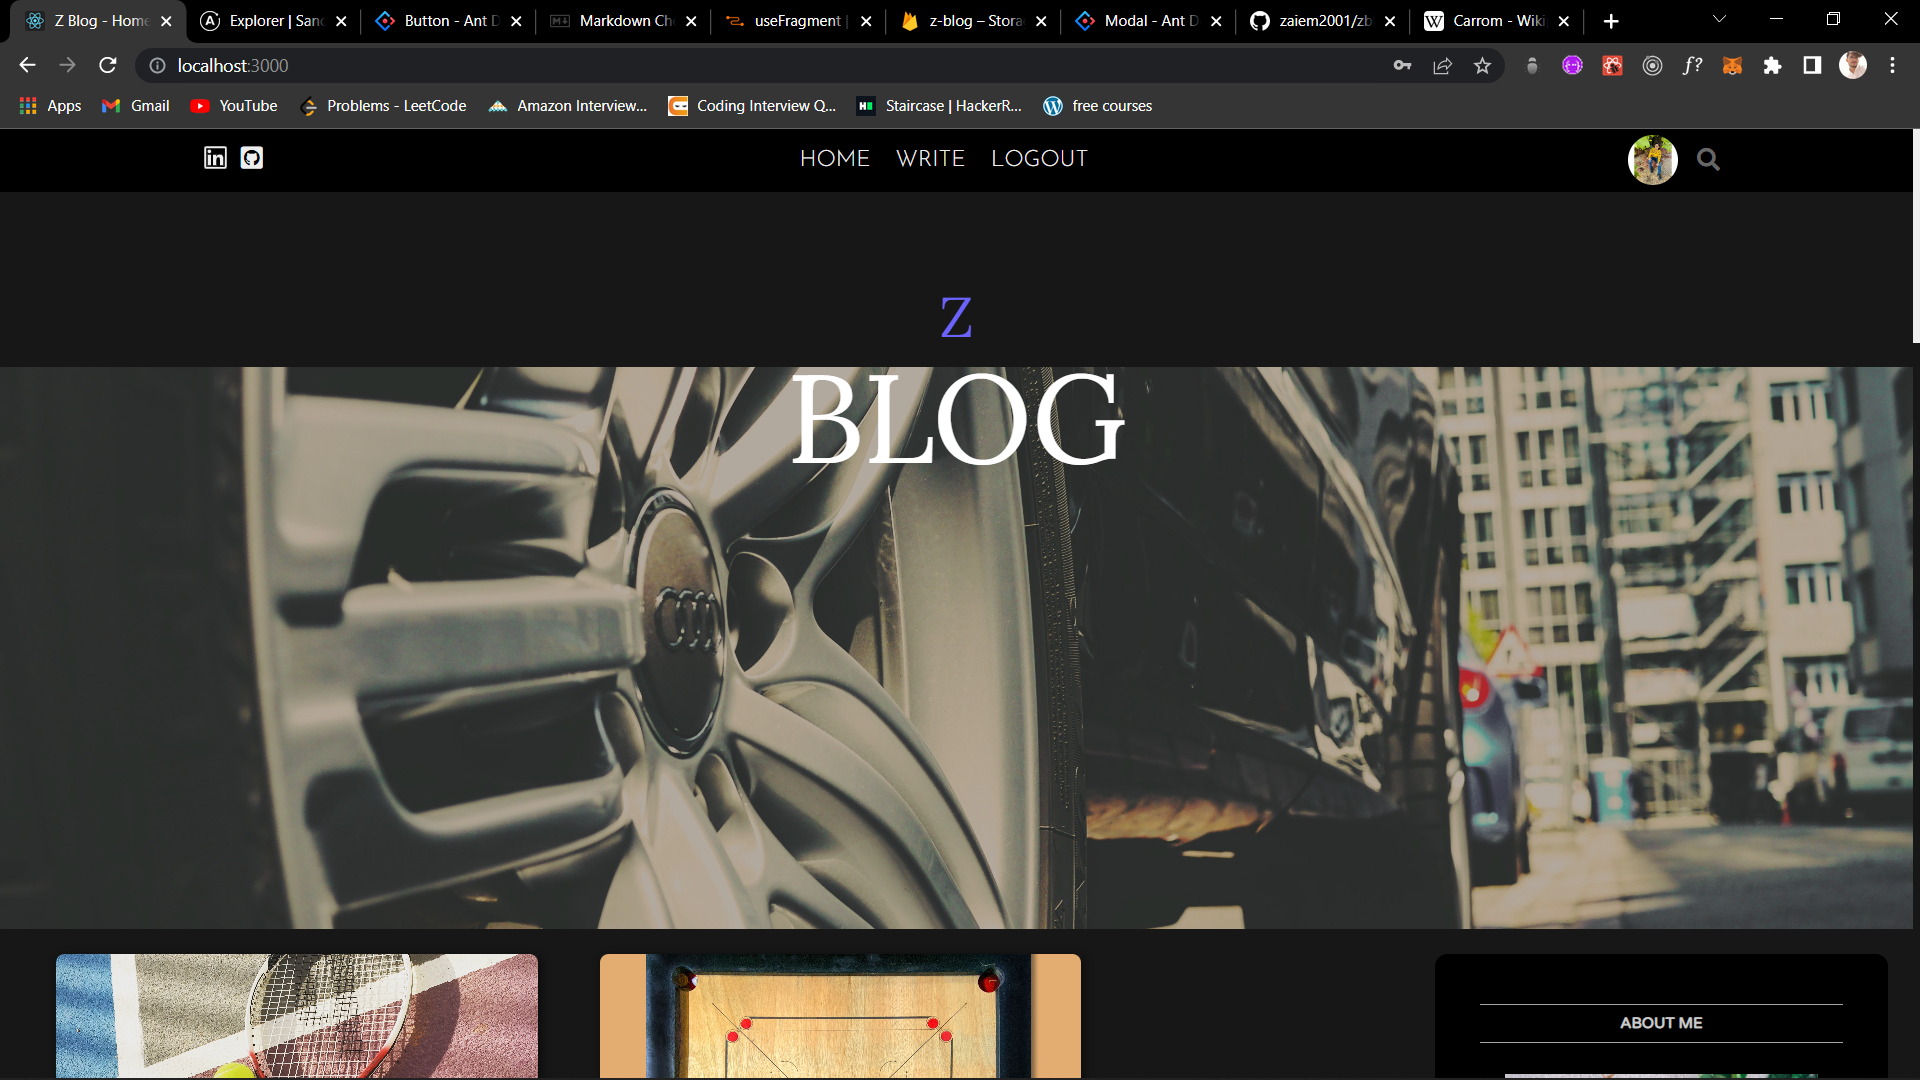 homepage